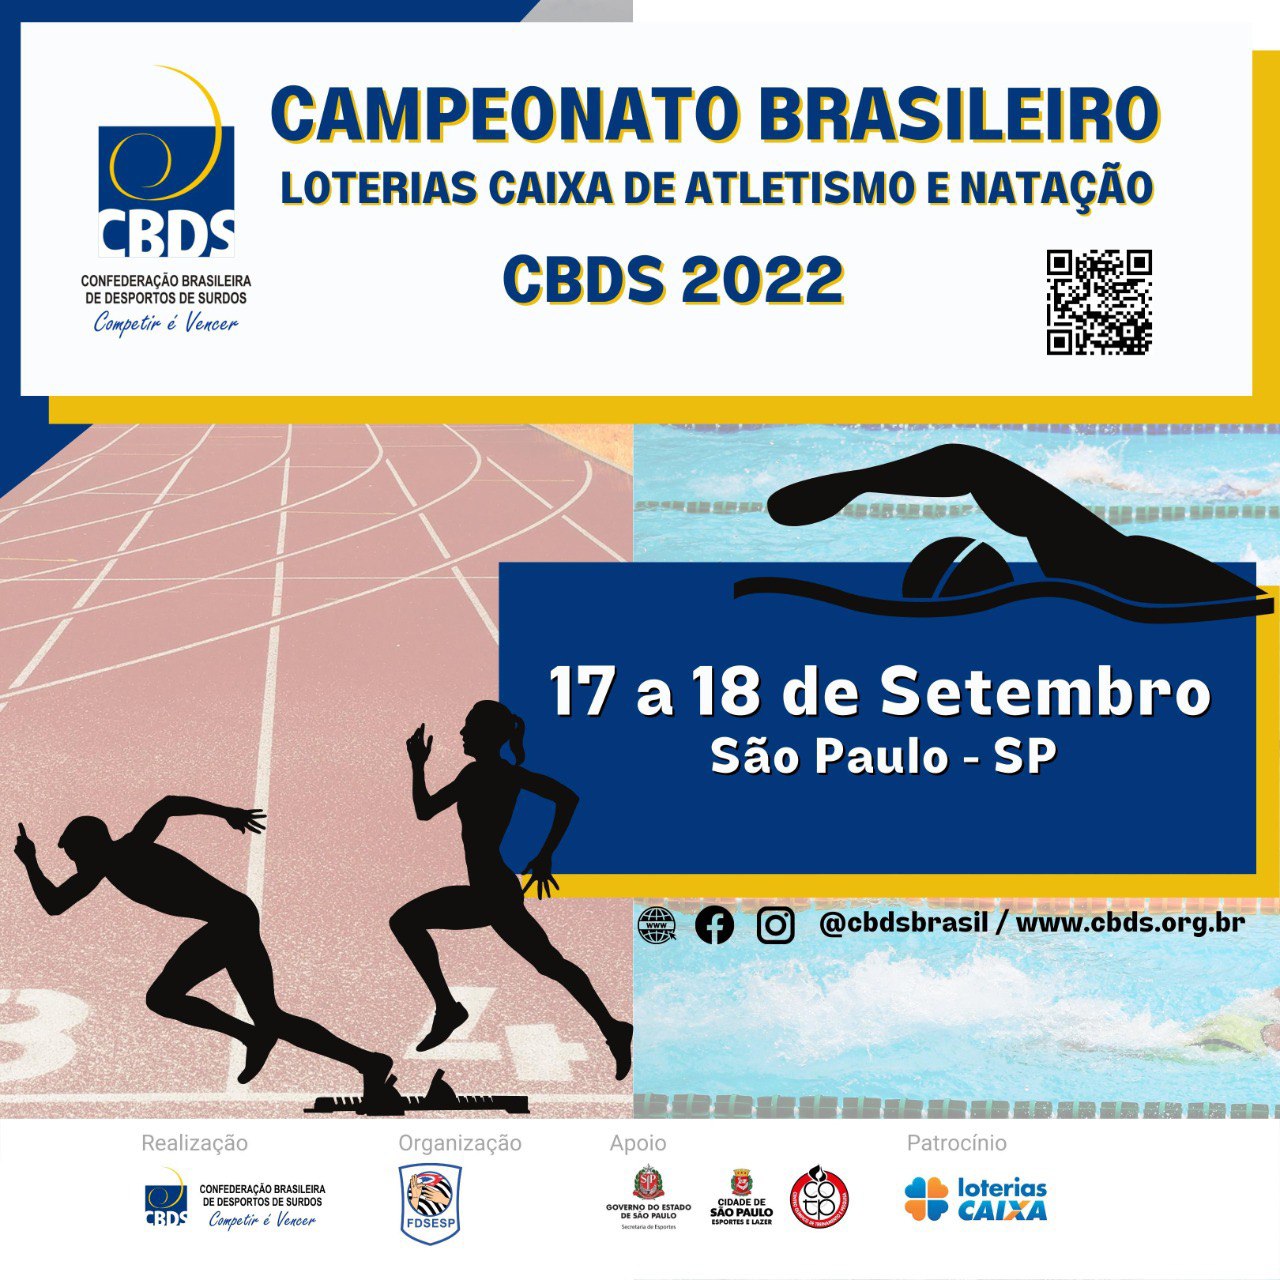 Campeonato Brasileiro Loterias Caixa de Atletismo 2022